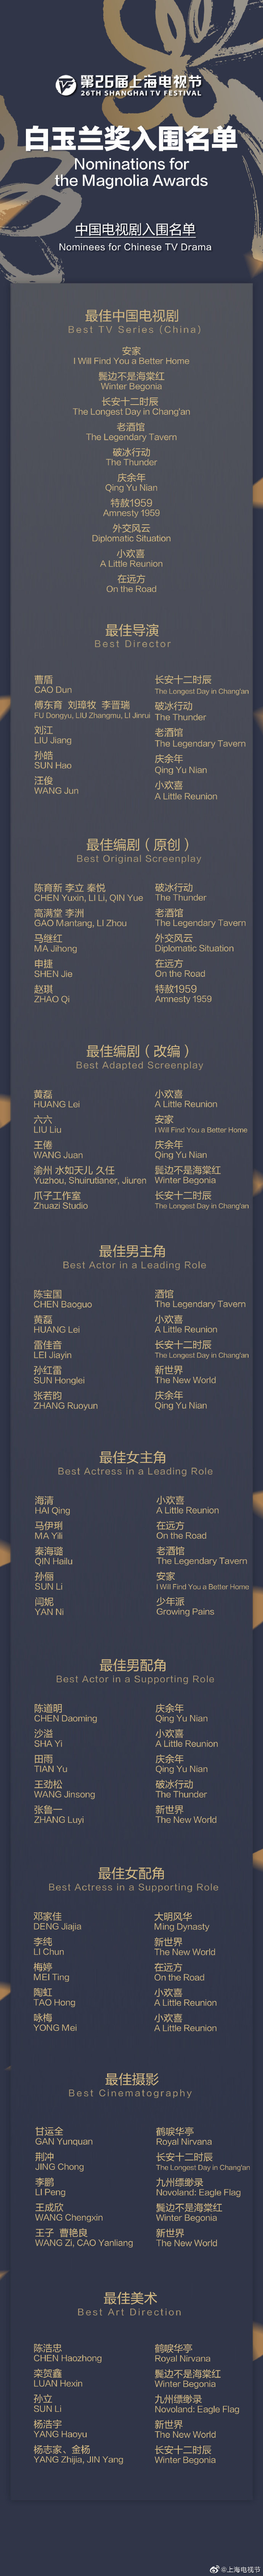 上海电视节白玉兰奖入围名单公布 《长安十二时辰》《庆余年》等将角逐最佳电视剧奖